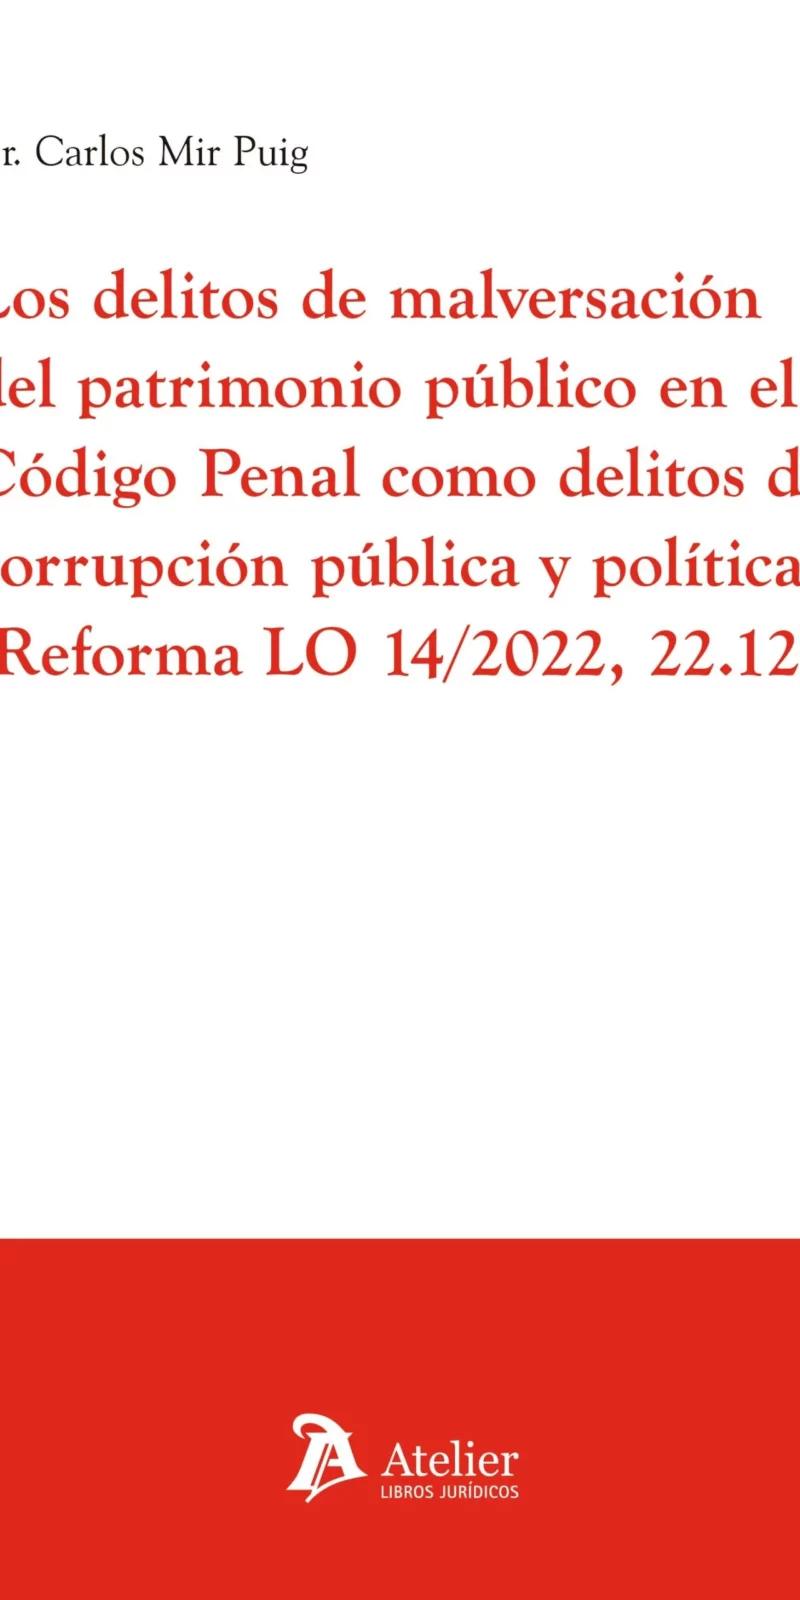 en el Código Penal como delitos de corrupción pública y política (Reforma LO 14/2022, 22.12)